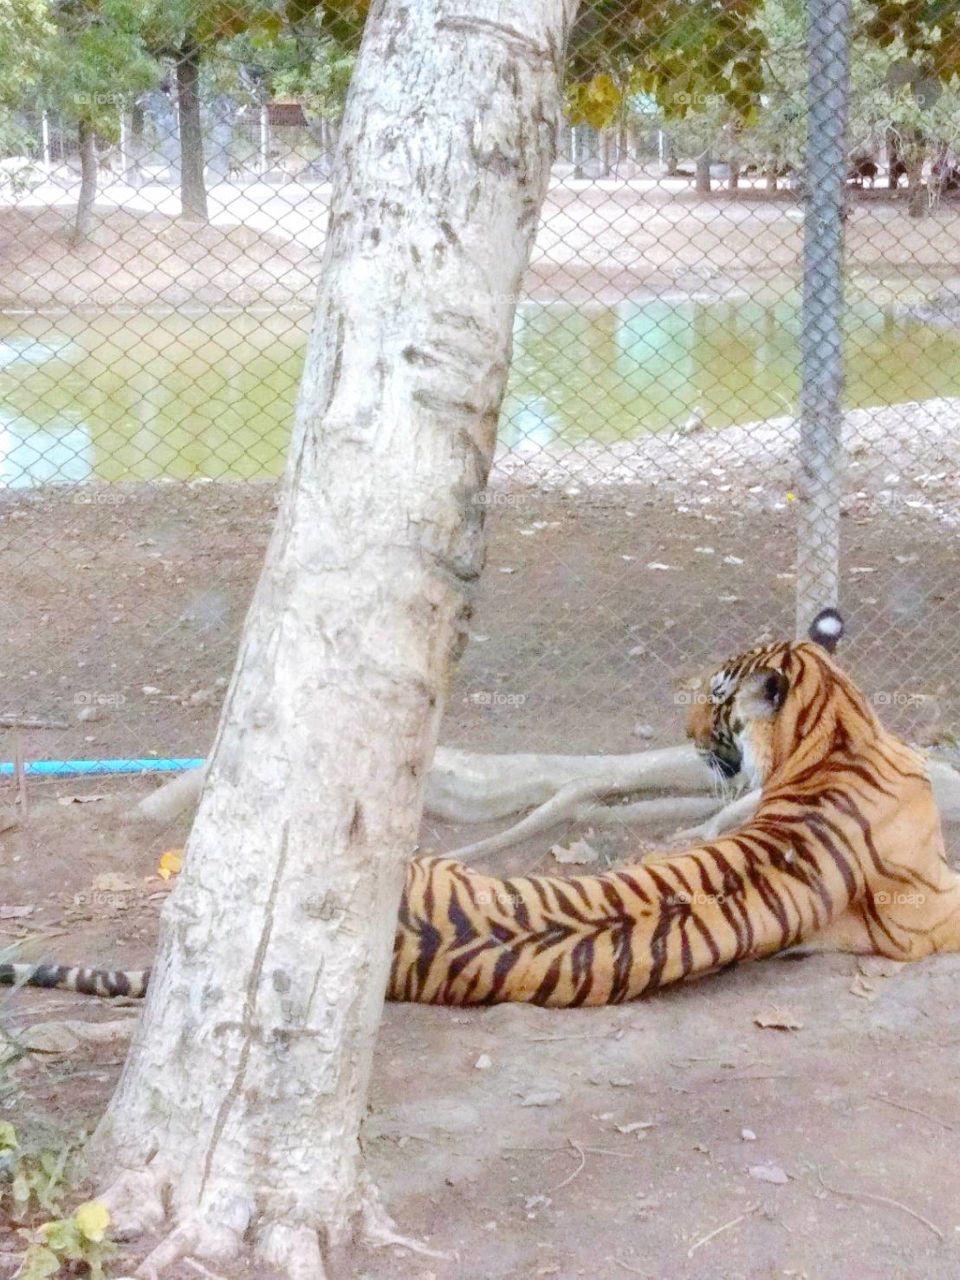 Tiger in the safari.